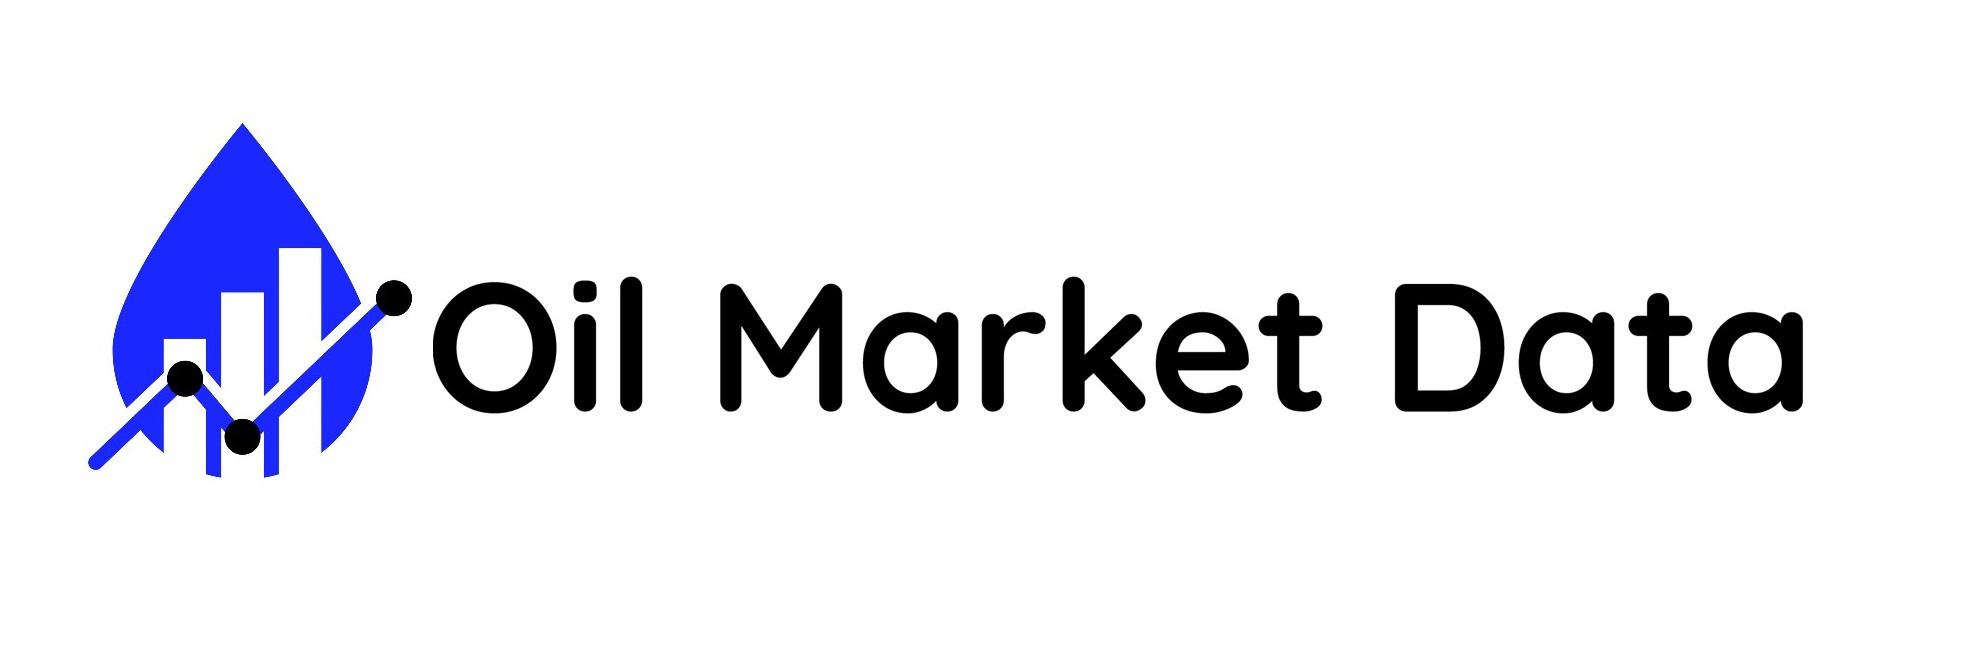 Oil Market Data Logo